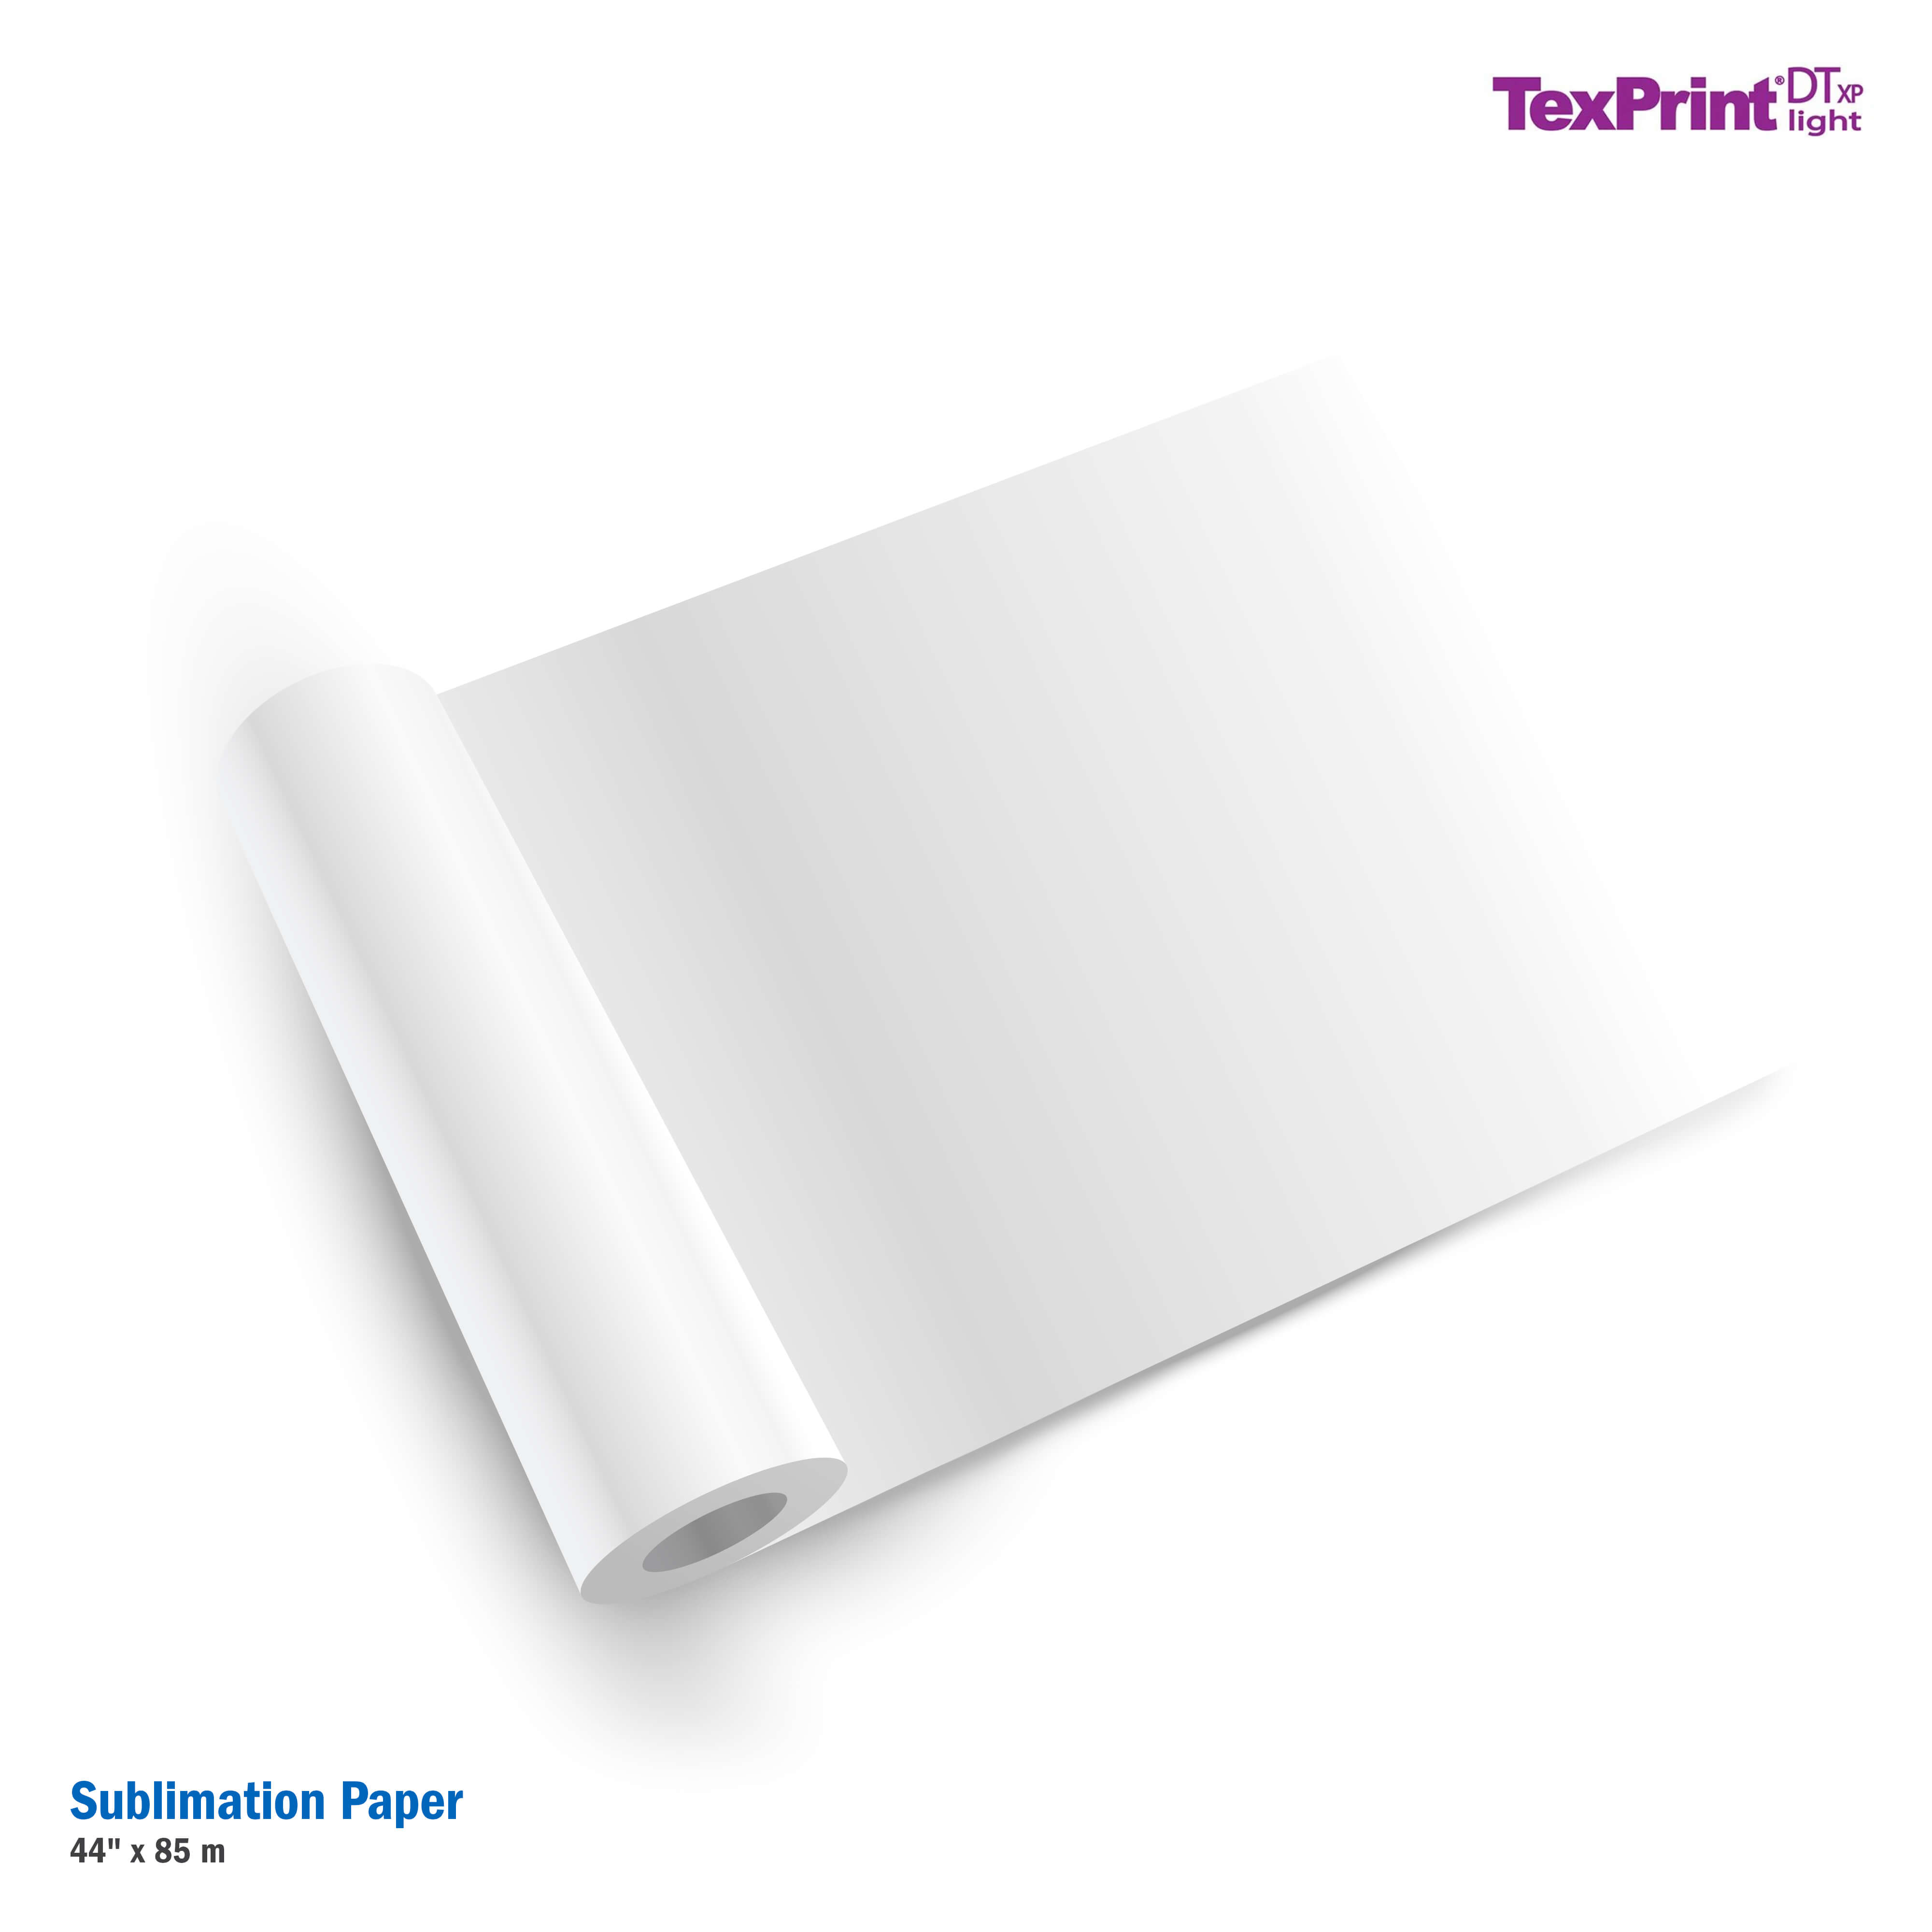 TexPrint®DTxp Light Sublimation Paper - 44" x 85 m